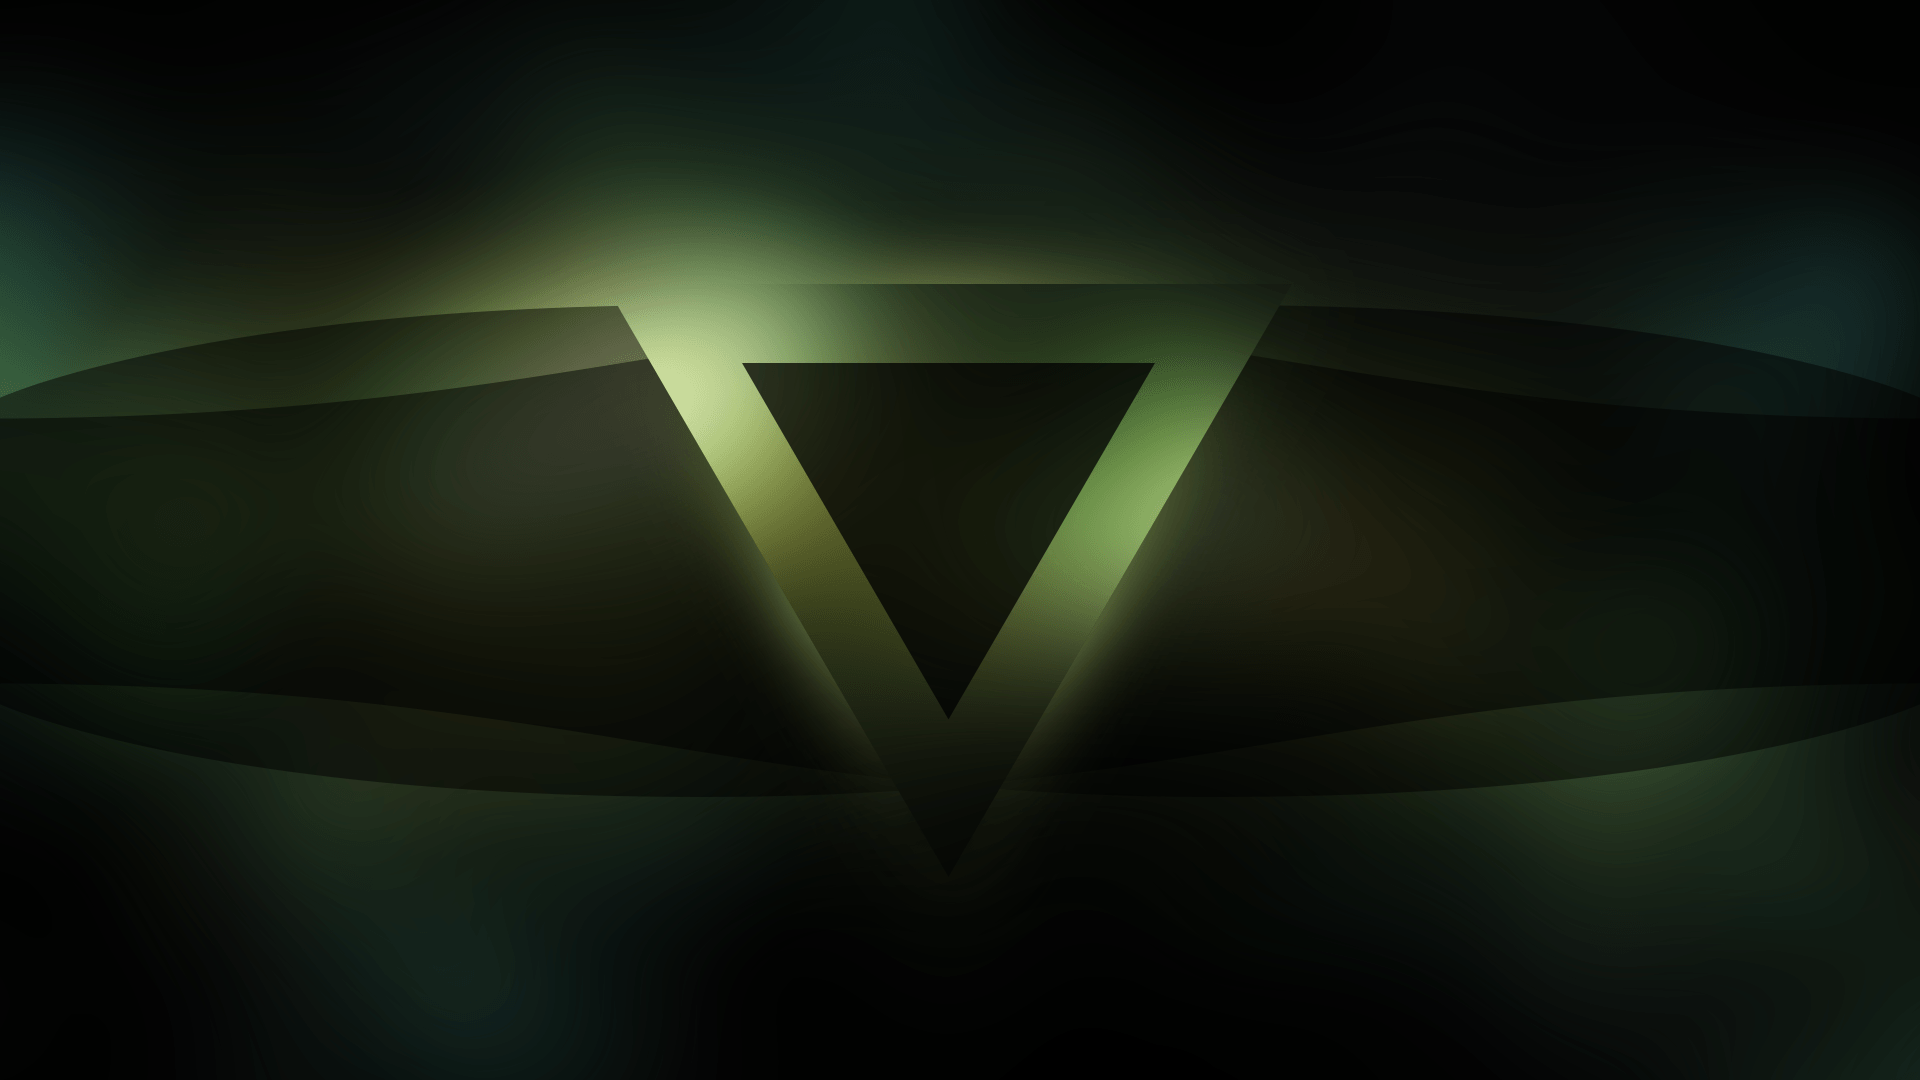 Dark Green Triangle Logo - Wallpaper : sunlight, dark, space, logo, symmetry, green, triangle